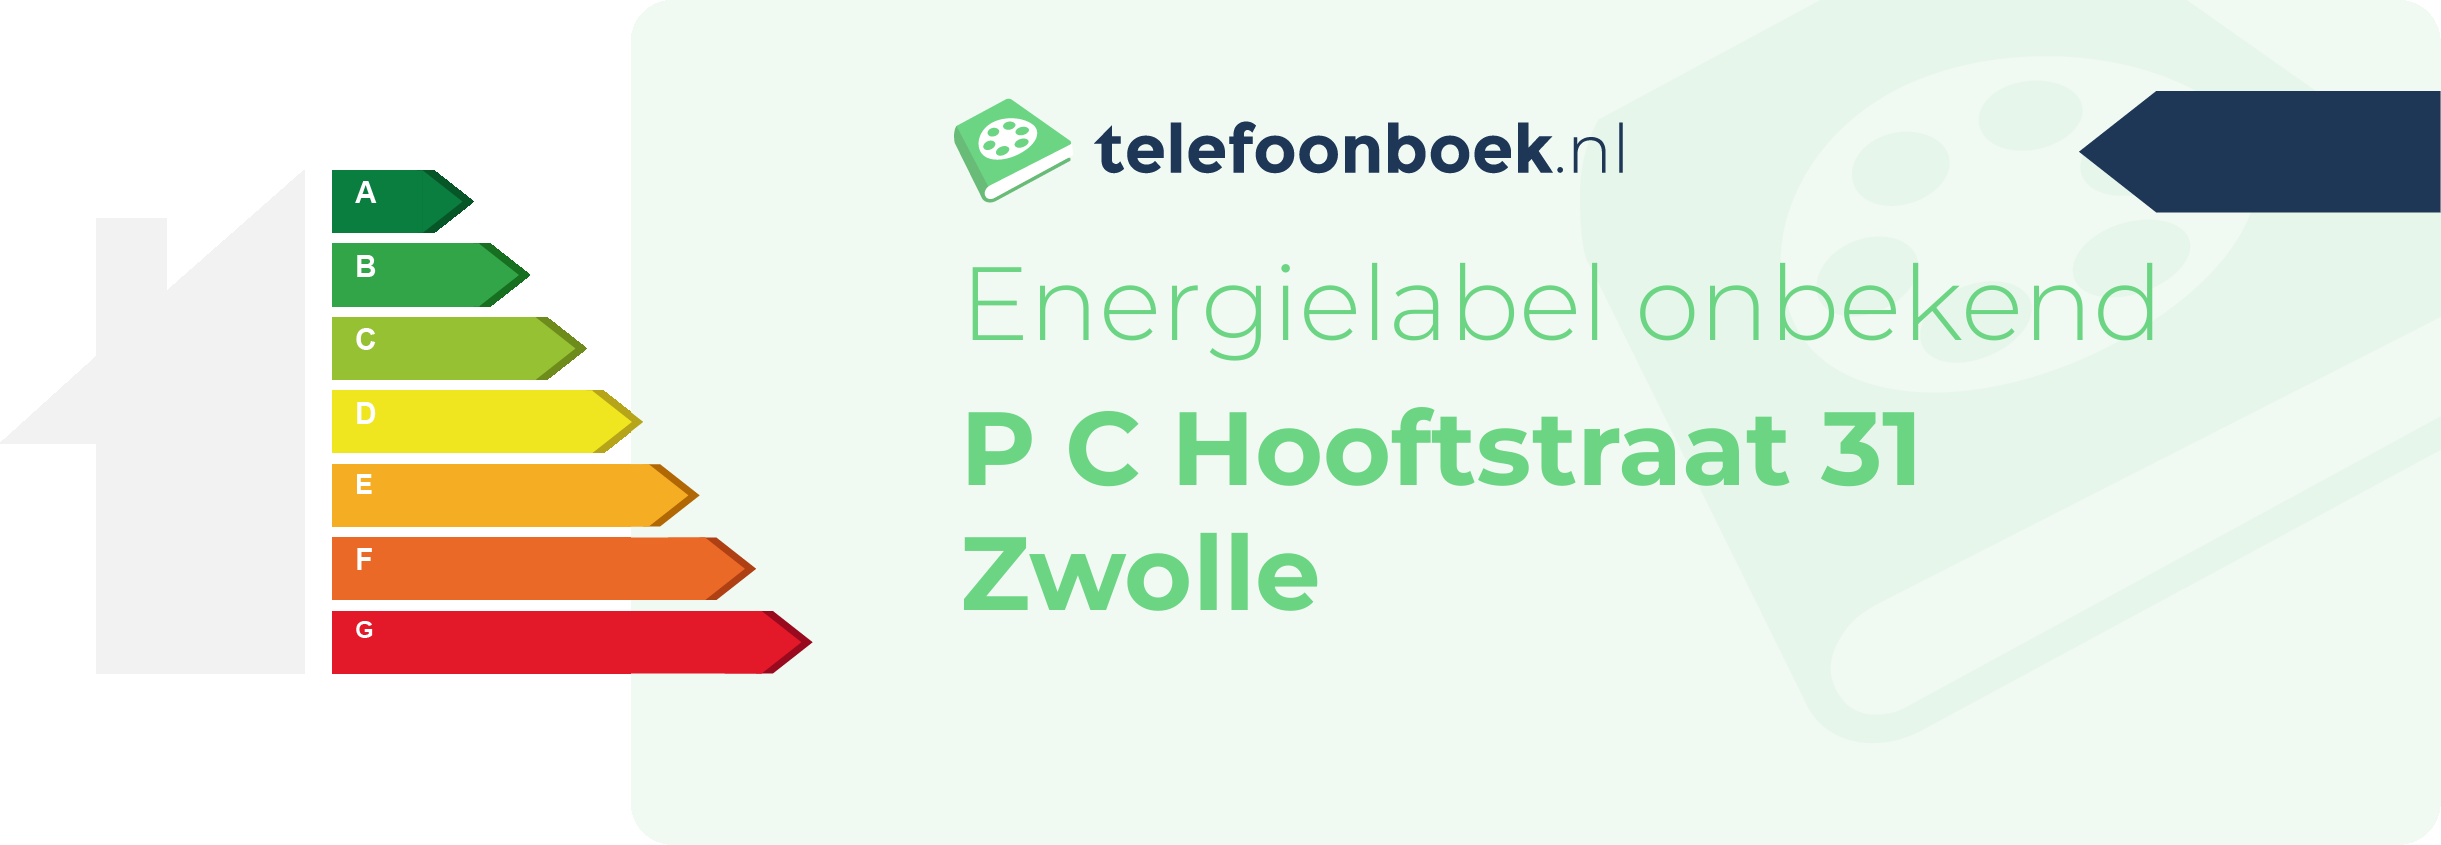 Energielabel P C Hooftstraat 31 Zwolle